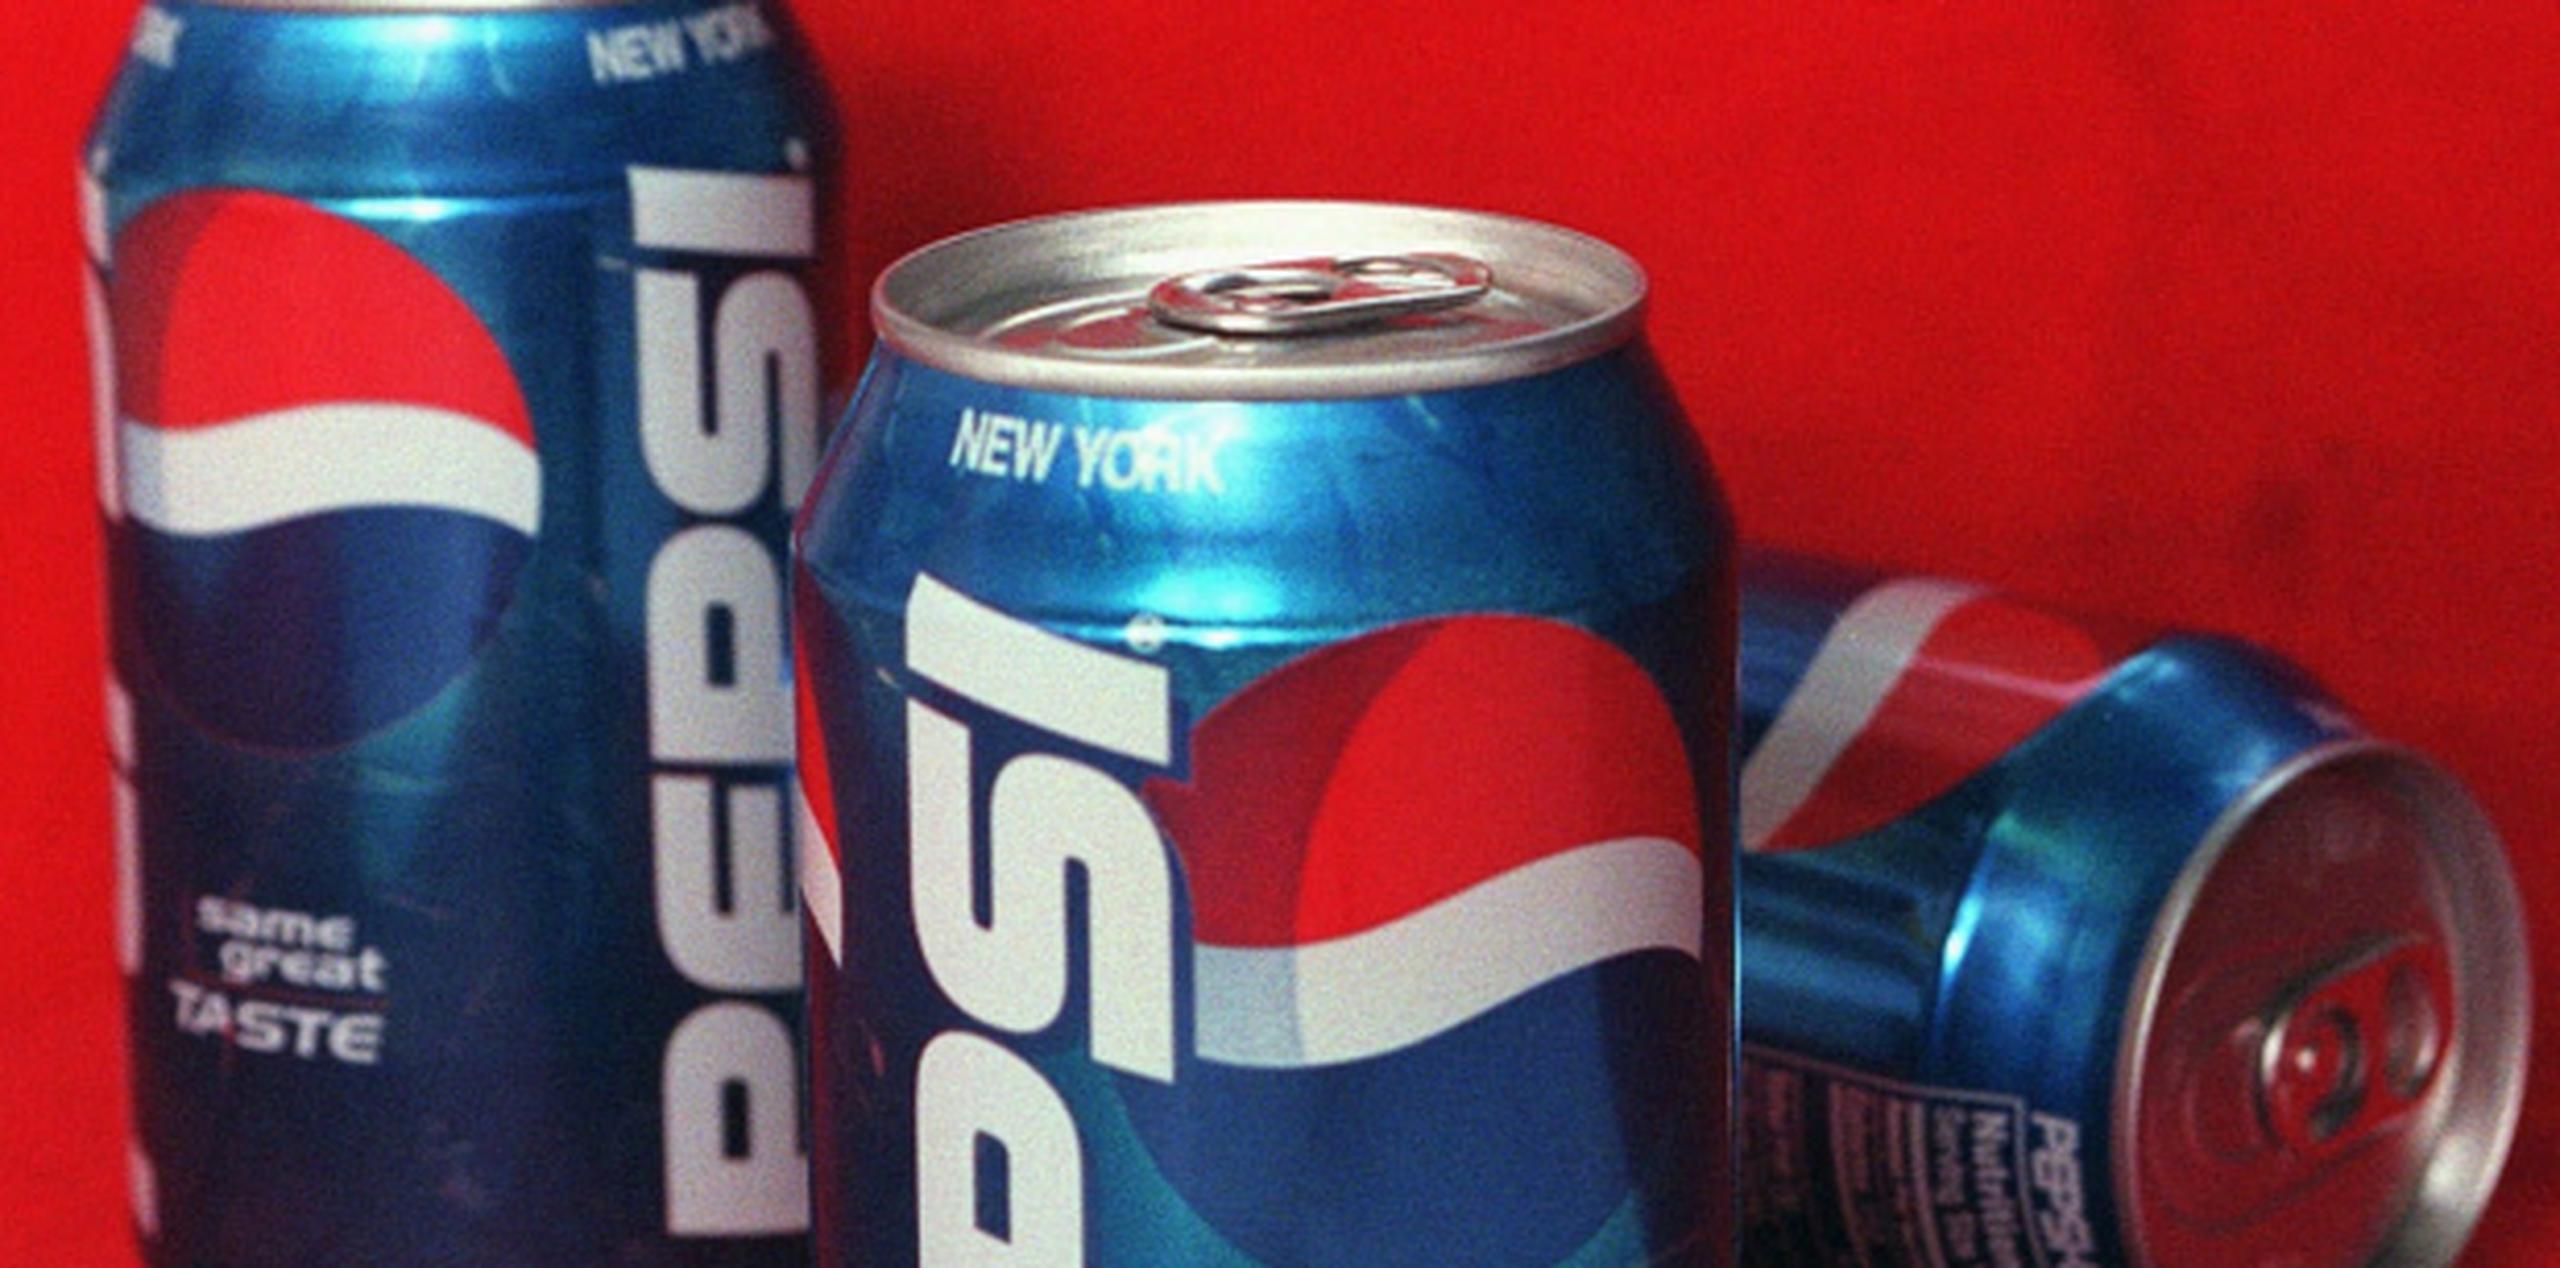 Los cambios fueron reportados por primera vez en la publicación especializada Beverage Digest y fueron confirmados posteriormente por PepsiCo. (Archivo)